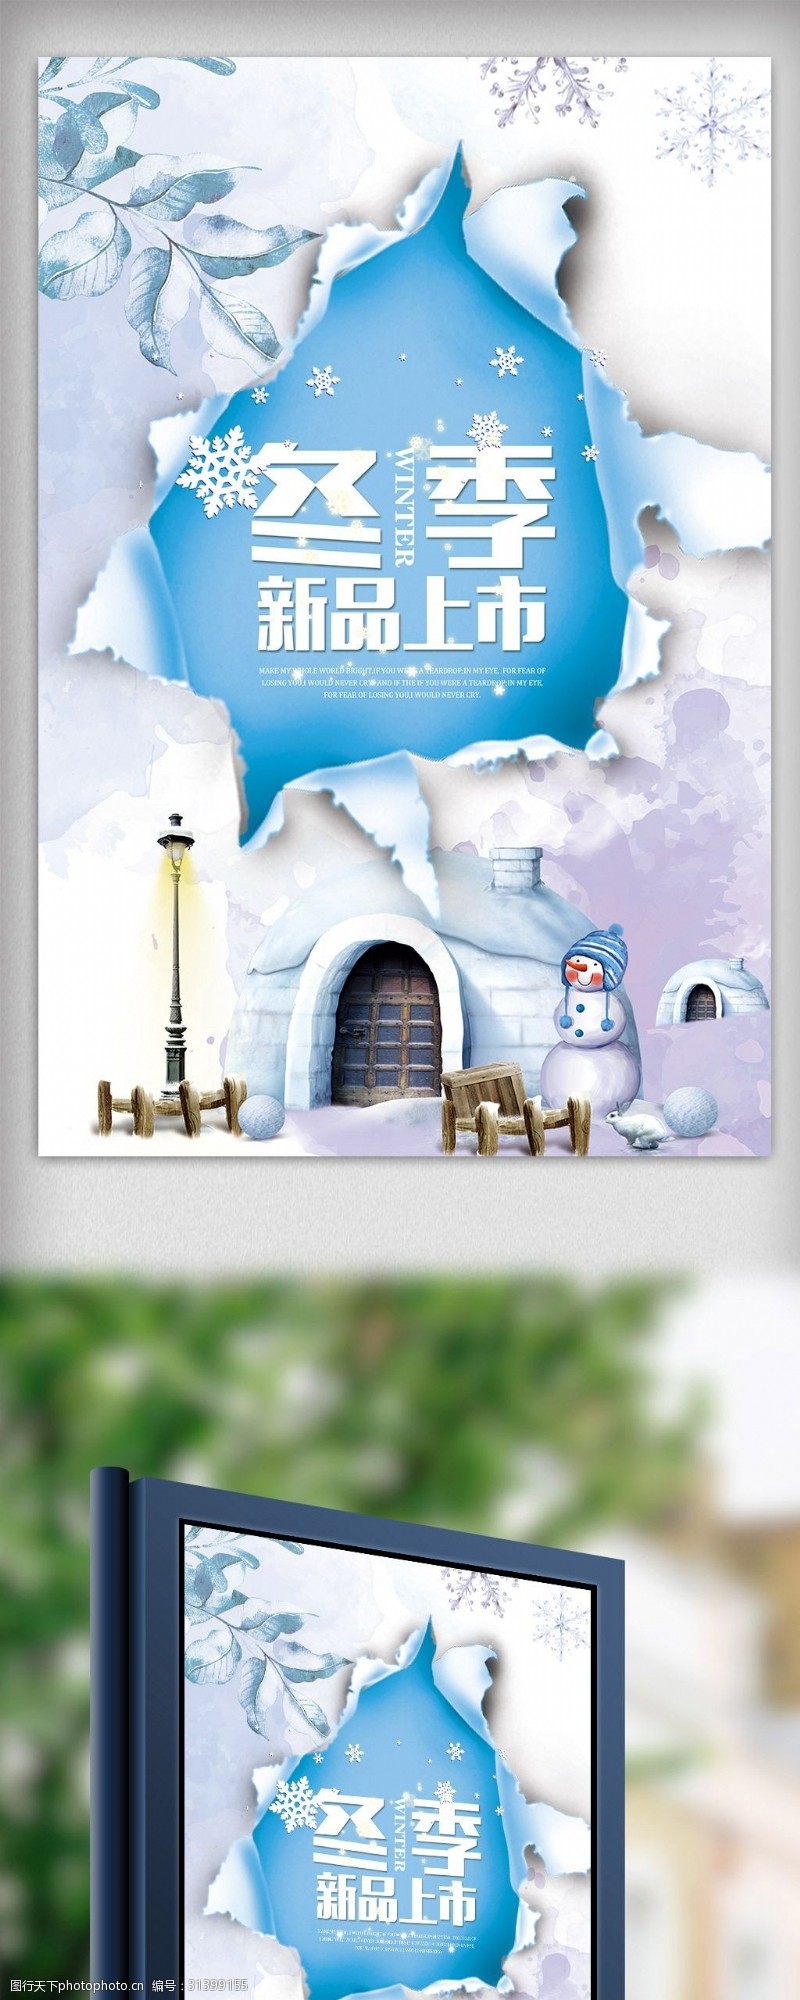 新年限时特惠2017清新冬季新品上市暖冬打折促销海报